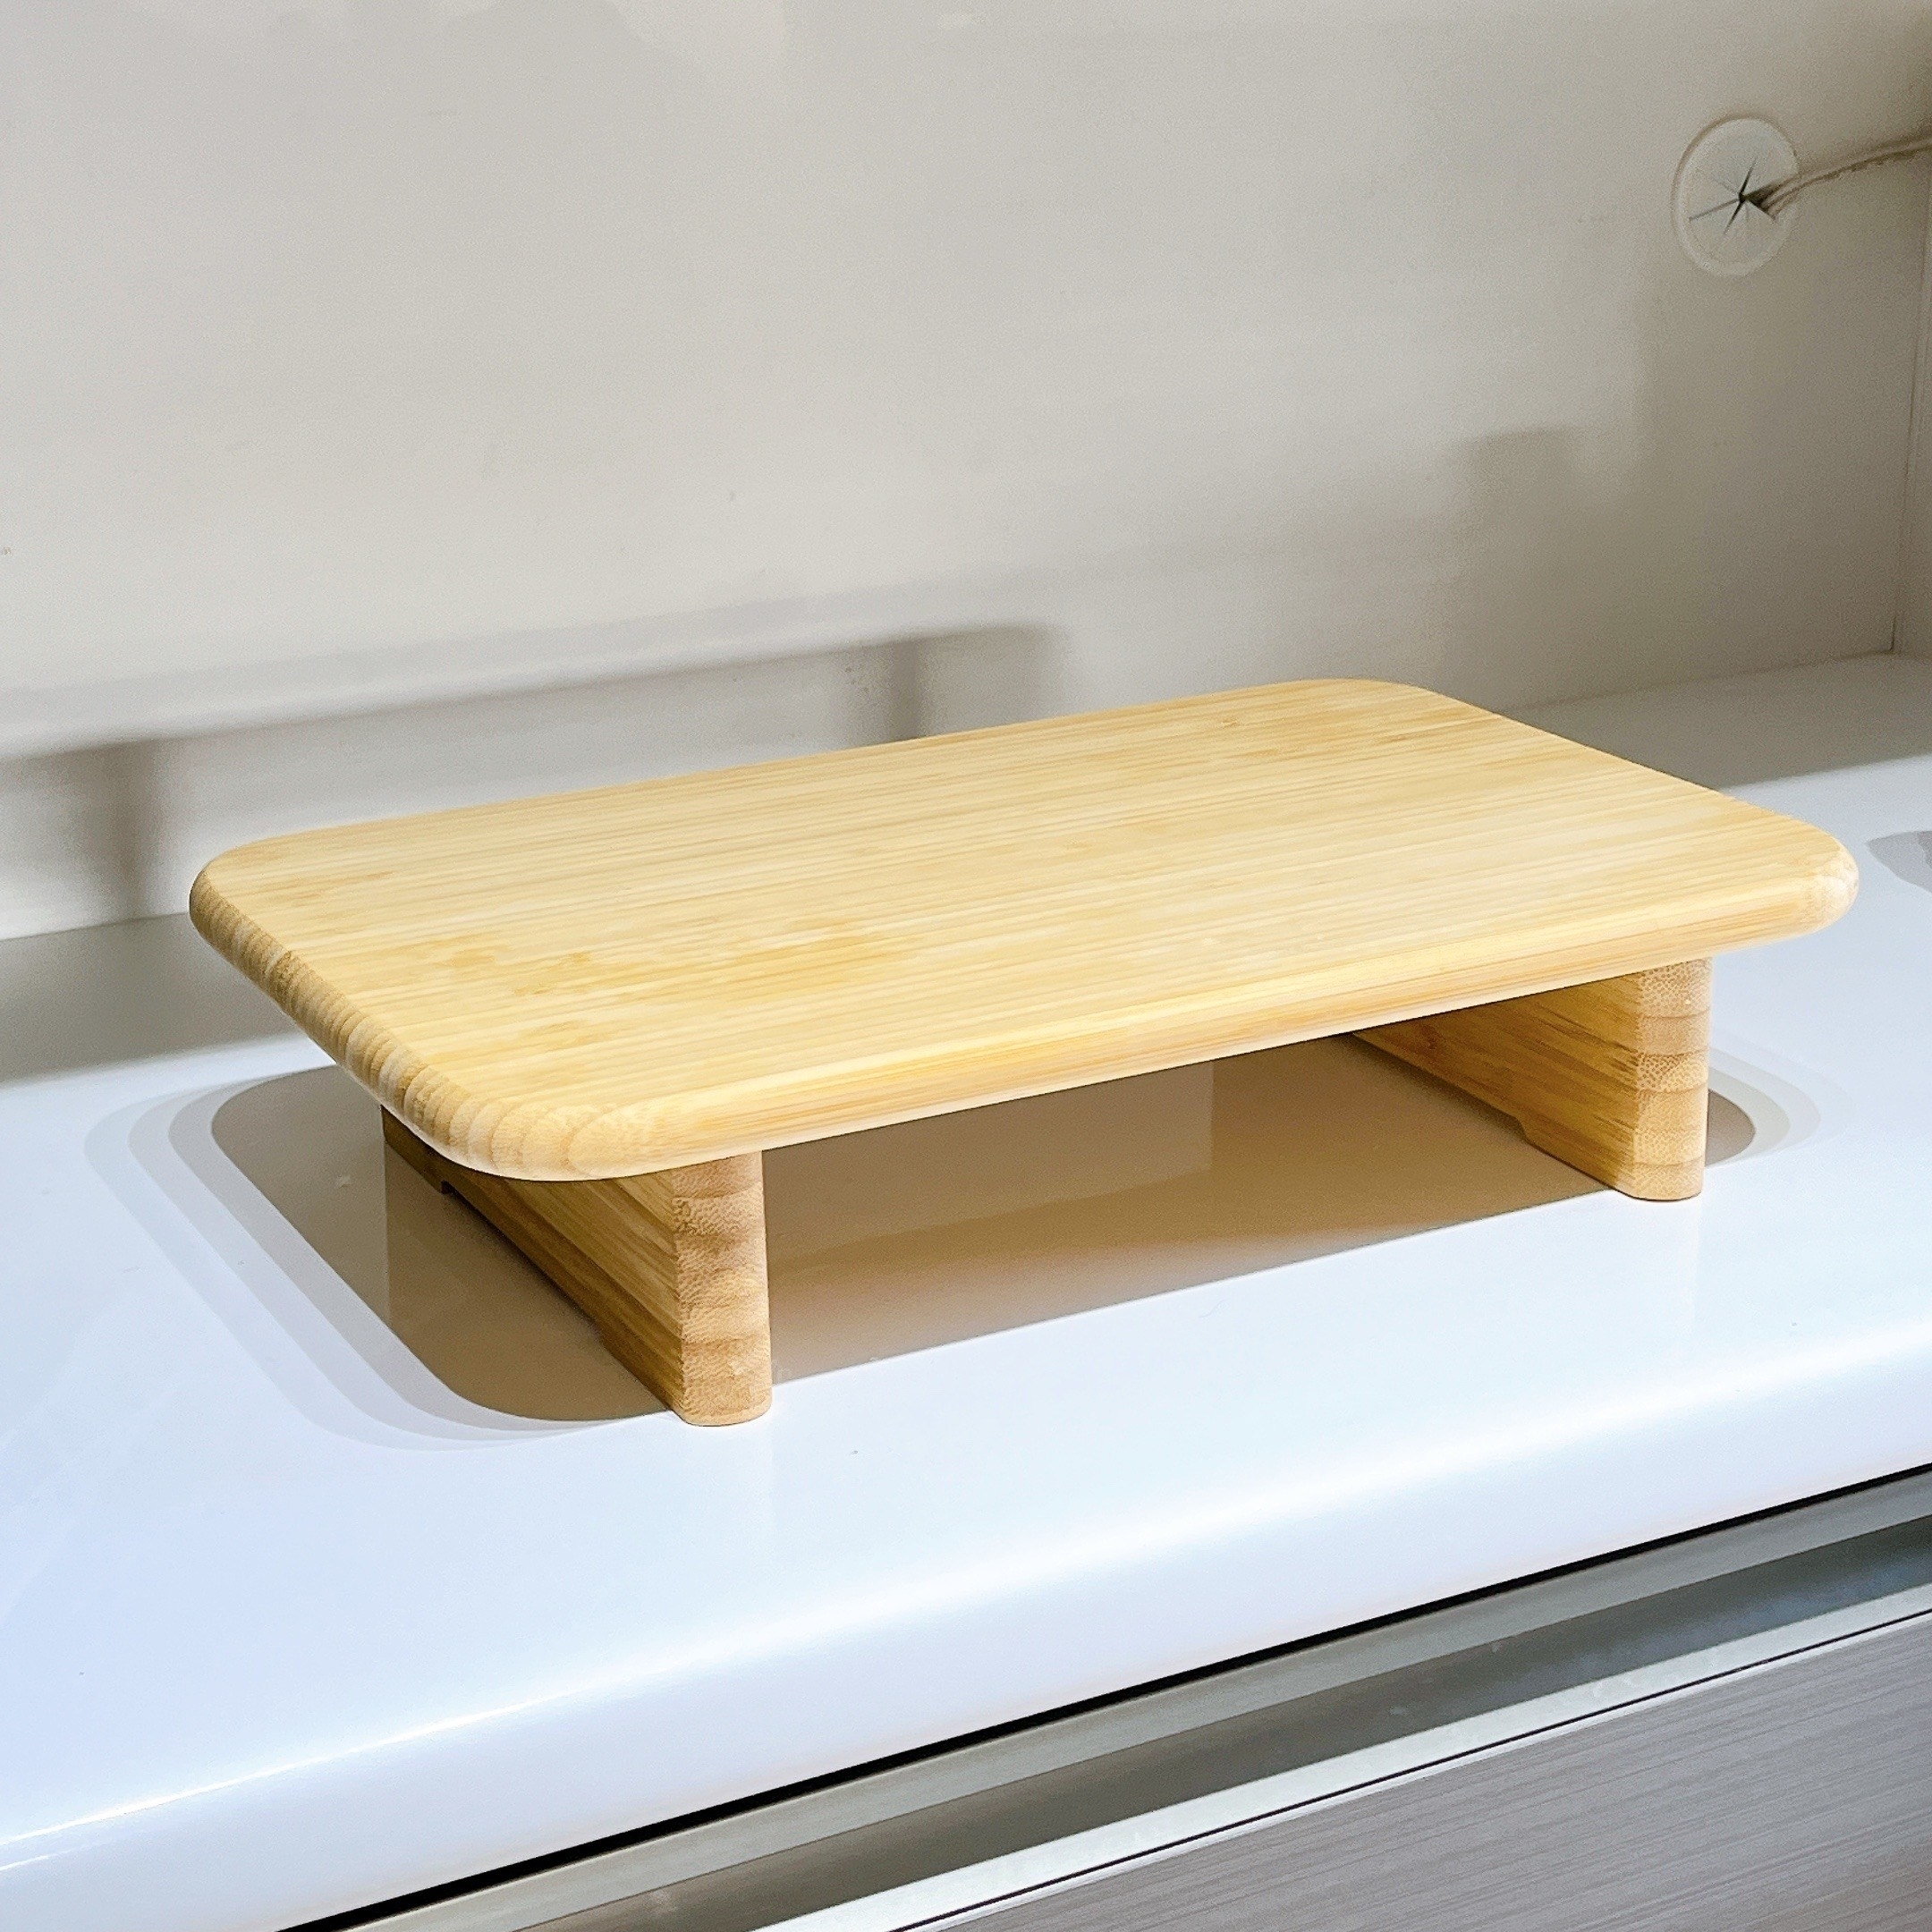 IKEA（イケア）のおすすめの食器「STOLTHET ストルトヘット まな板」